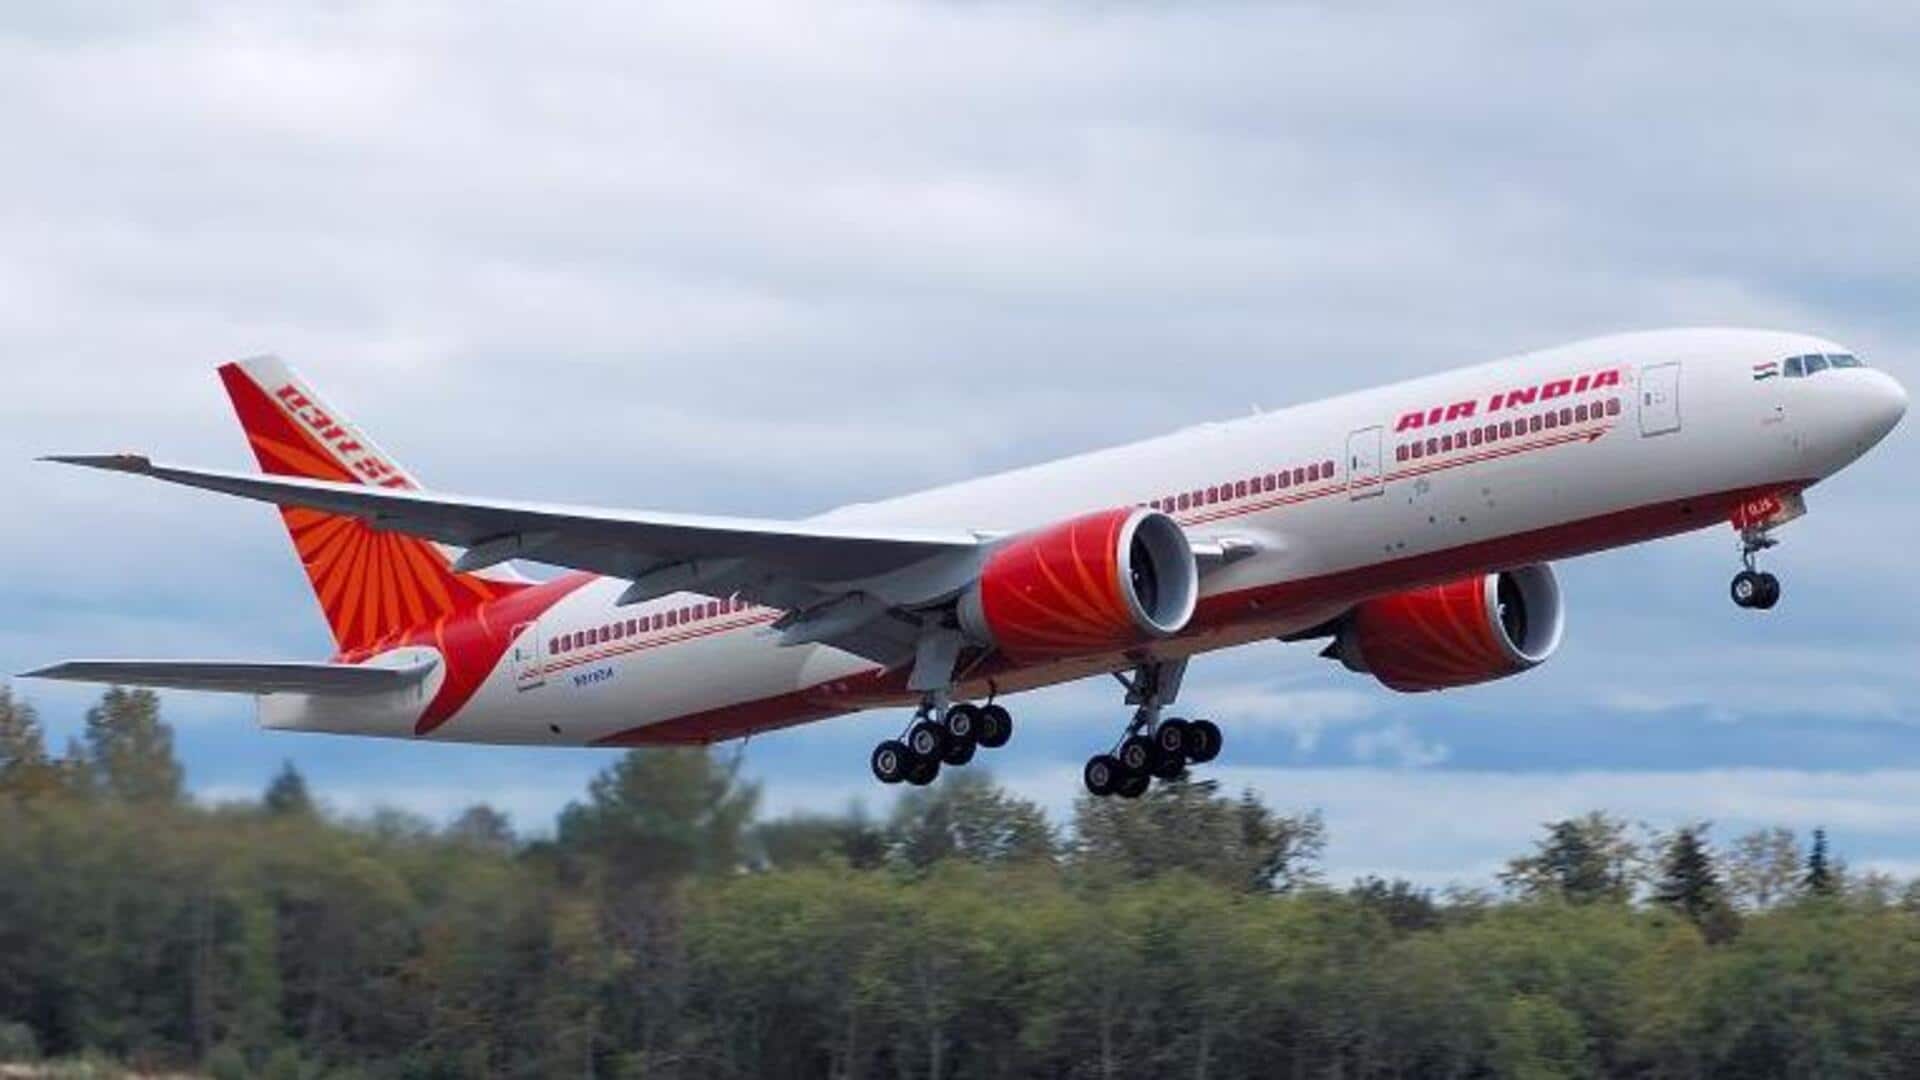 एयर इंडिया की दिल्ली-सैन फ्रांसिस्को फ्लाइट की तकनीकी खराबी के बाद रूस में इमरजेंसी लैंडिंग